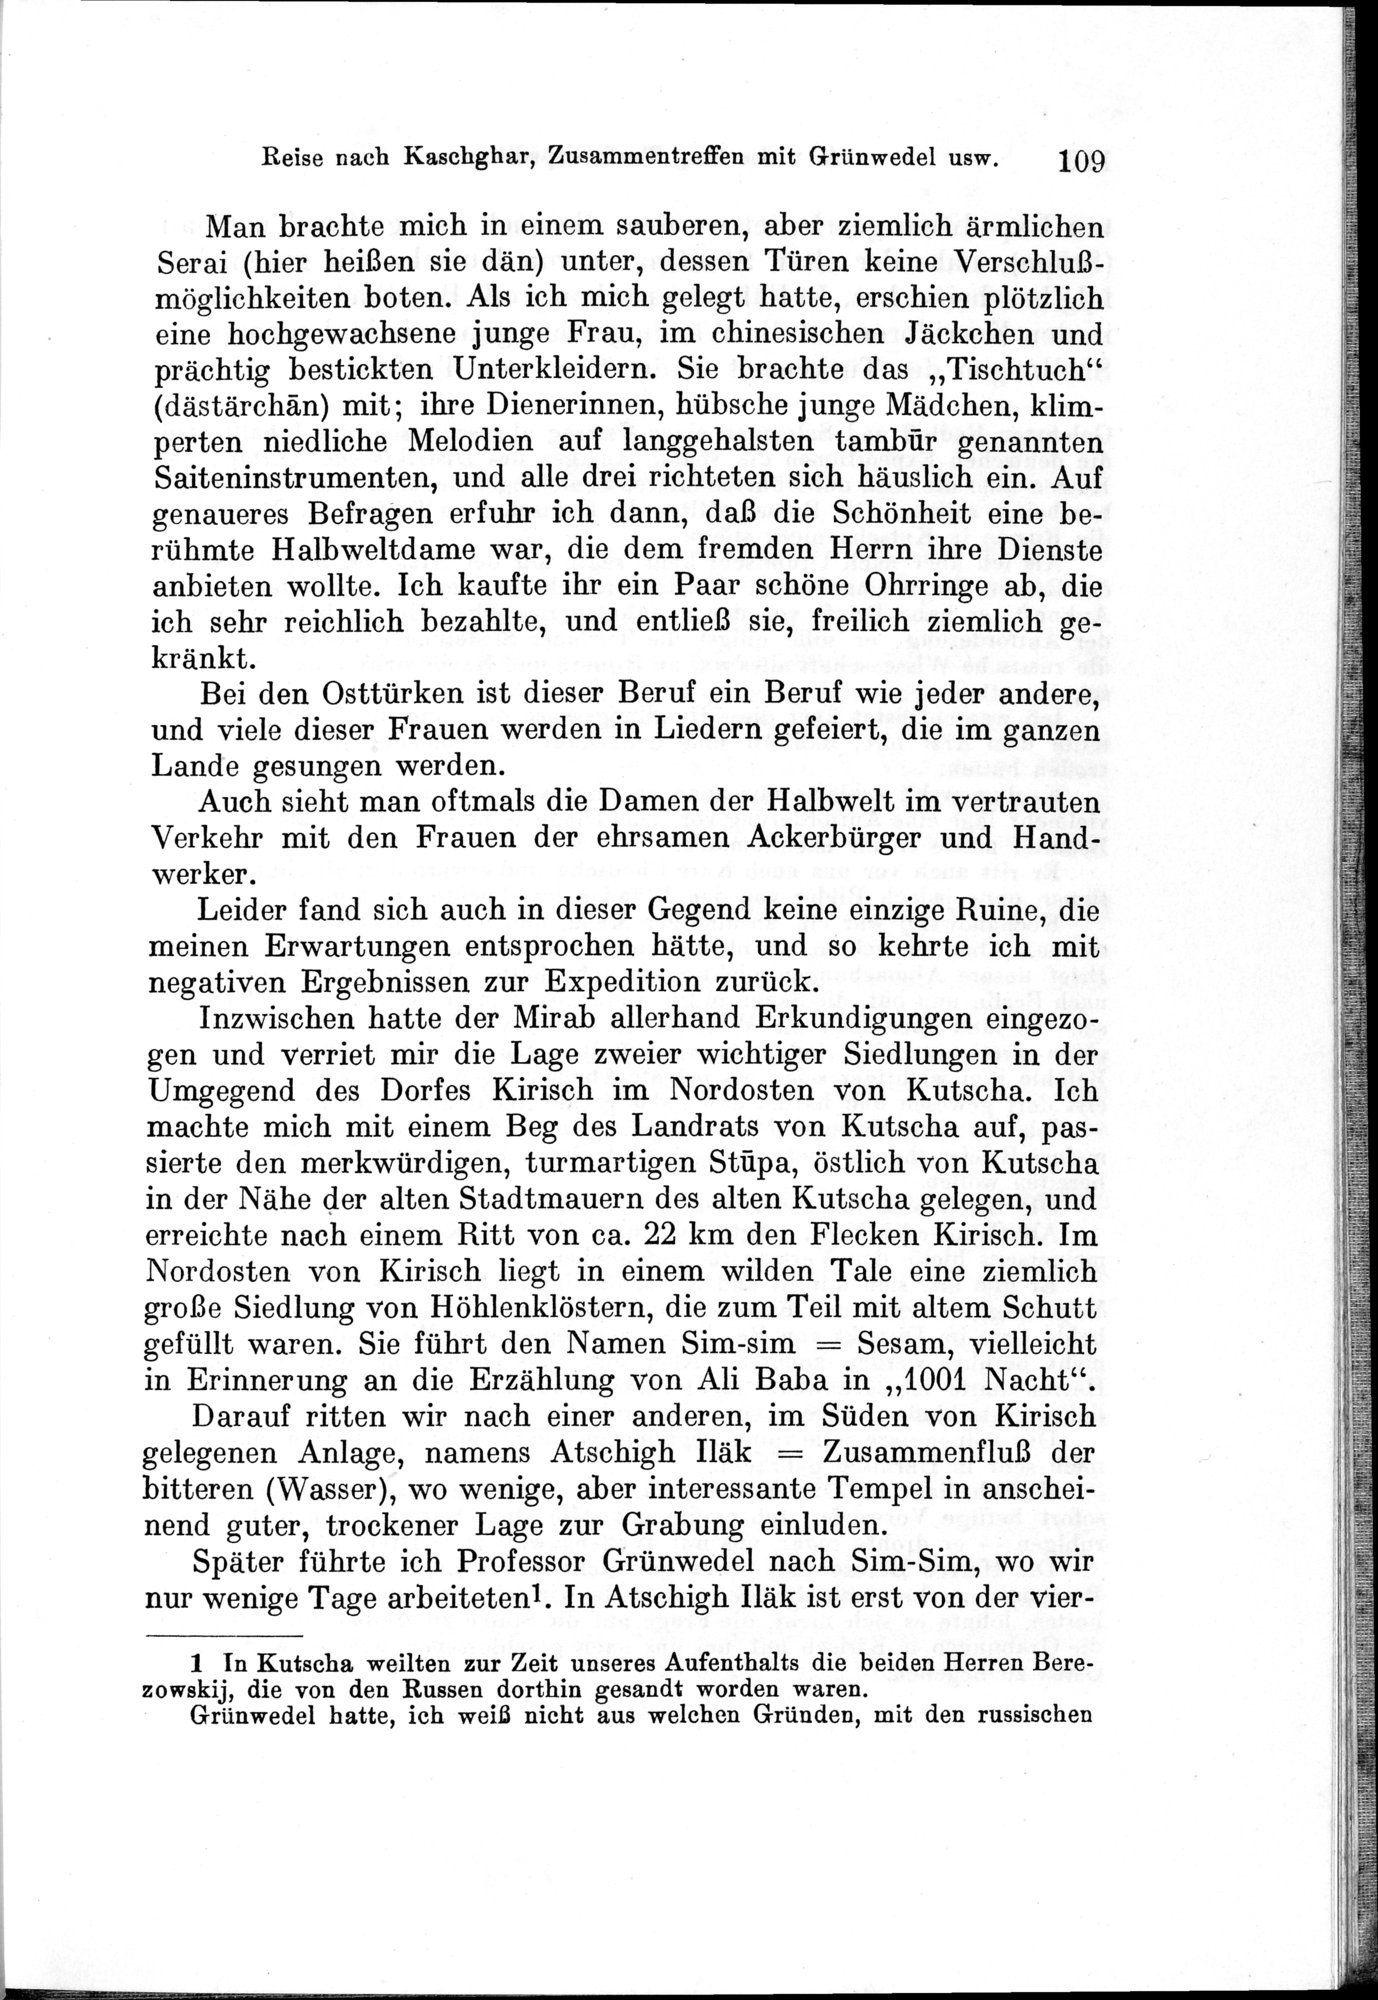 Auf Hellas Spuren in Ostturkistan : vol.1 / Page 159 (Grayscale High Resolution Image)